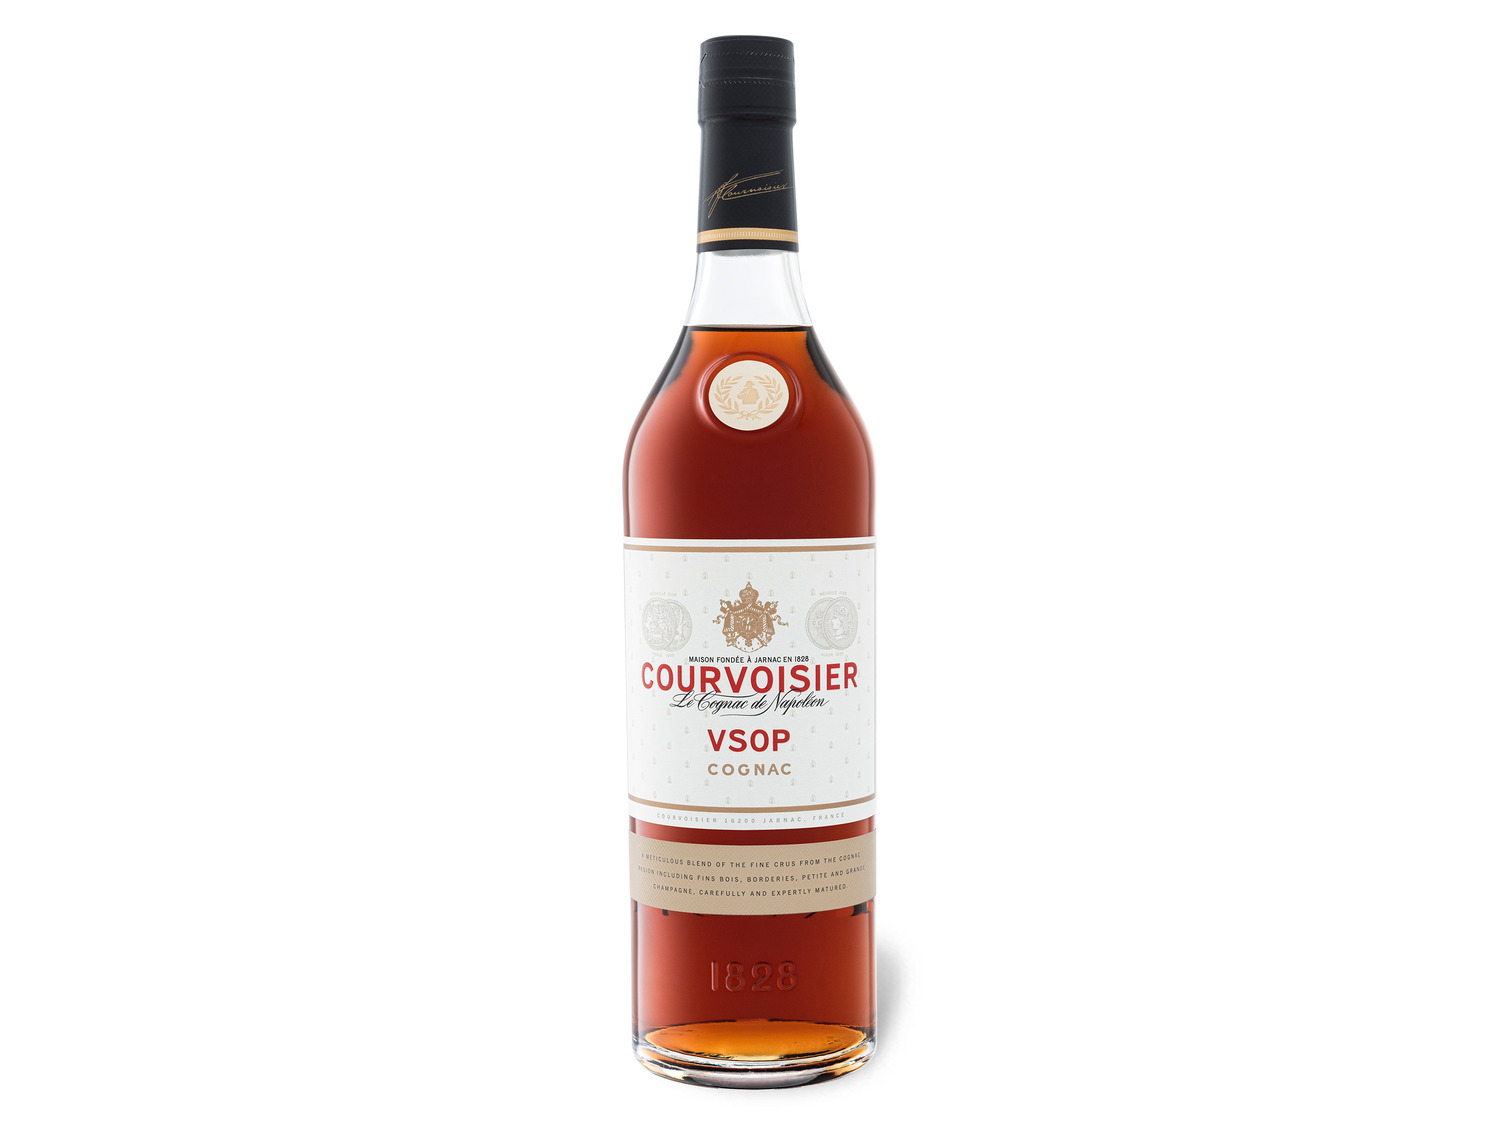 | Geschenkbox Vol mit Cognac LIDL VSOP 40% Courvoisier